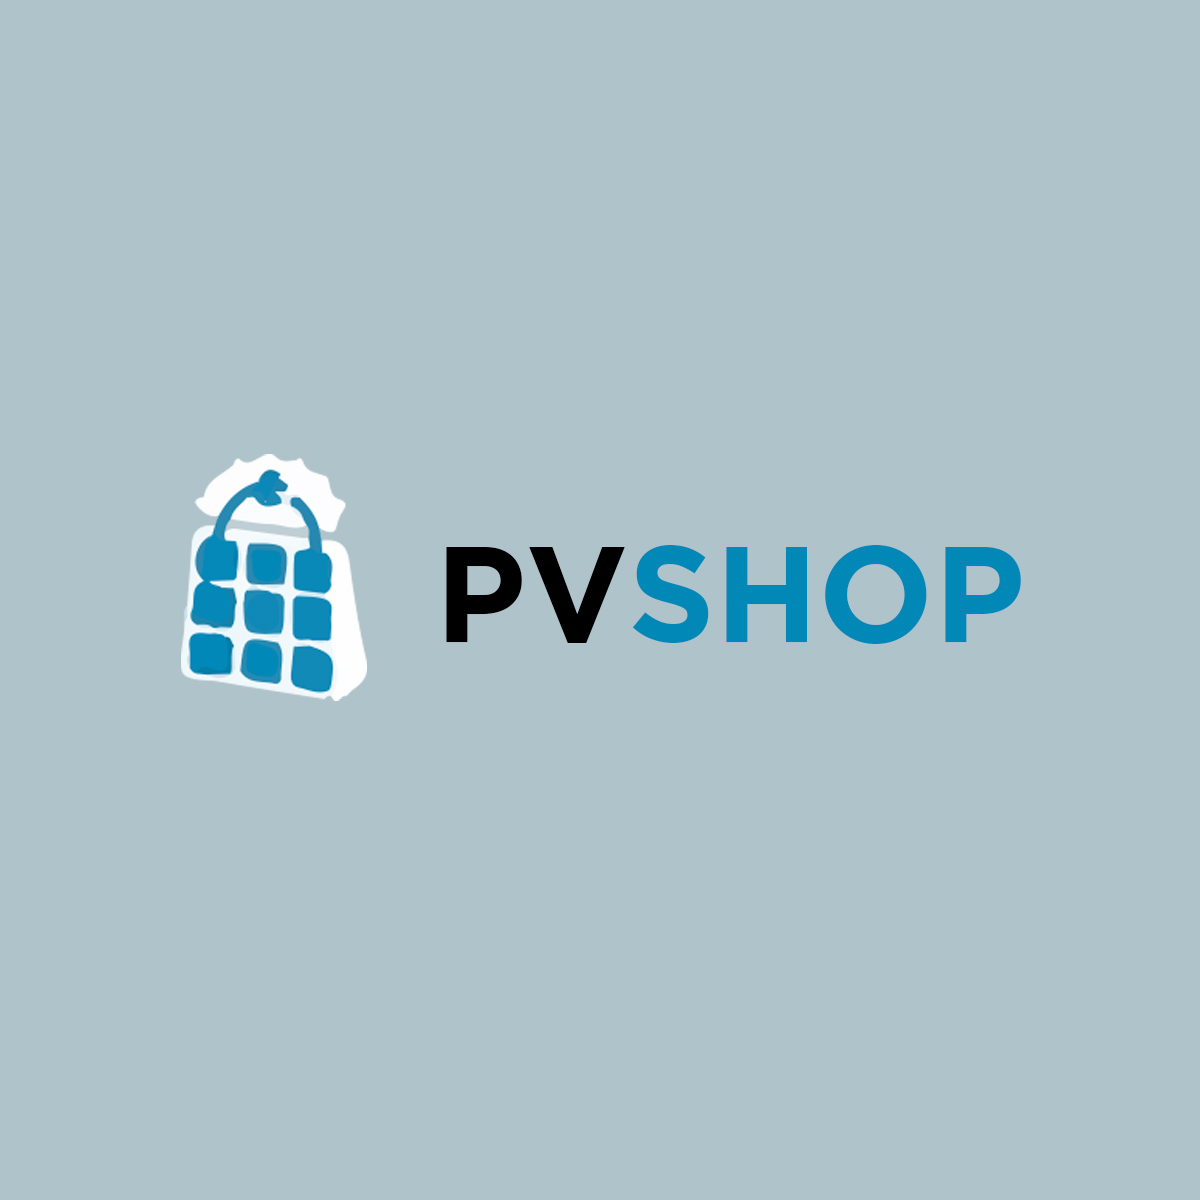 PVSHOP logo